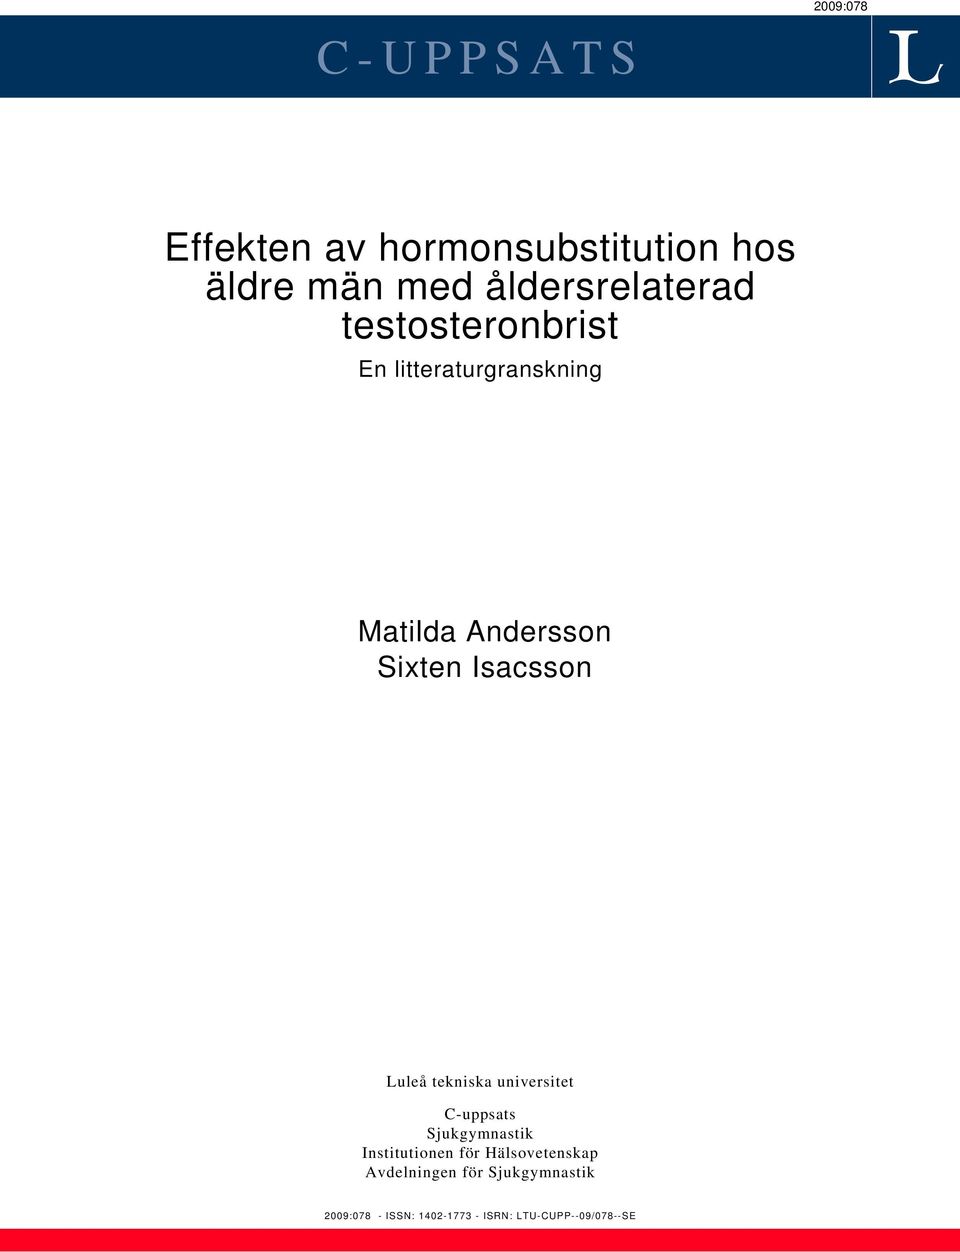 Isacsson Luleå tekniska universitet C-uppsats Sjukgymnastik Institutionen för